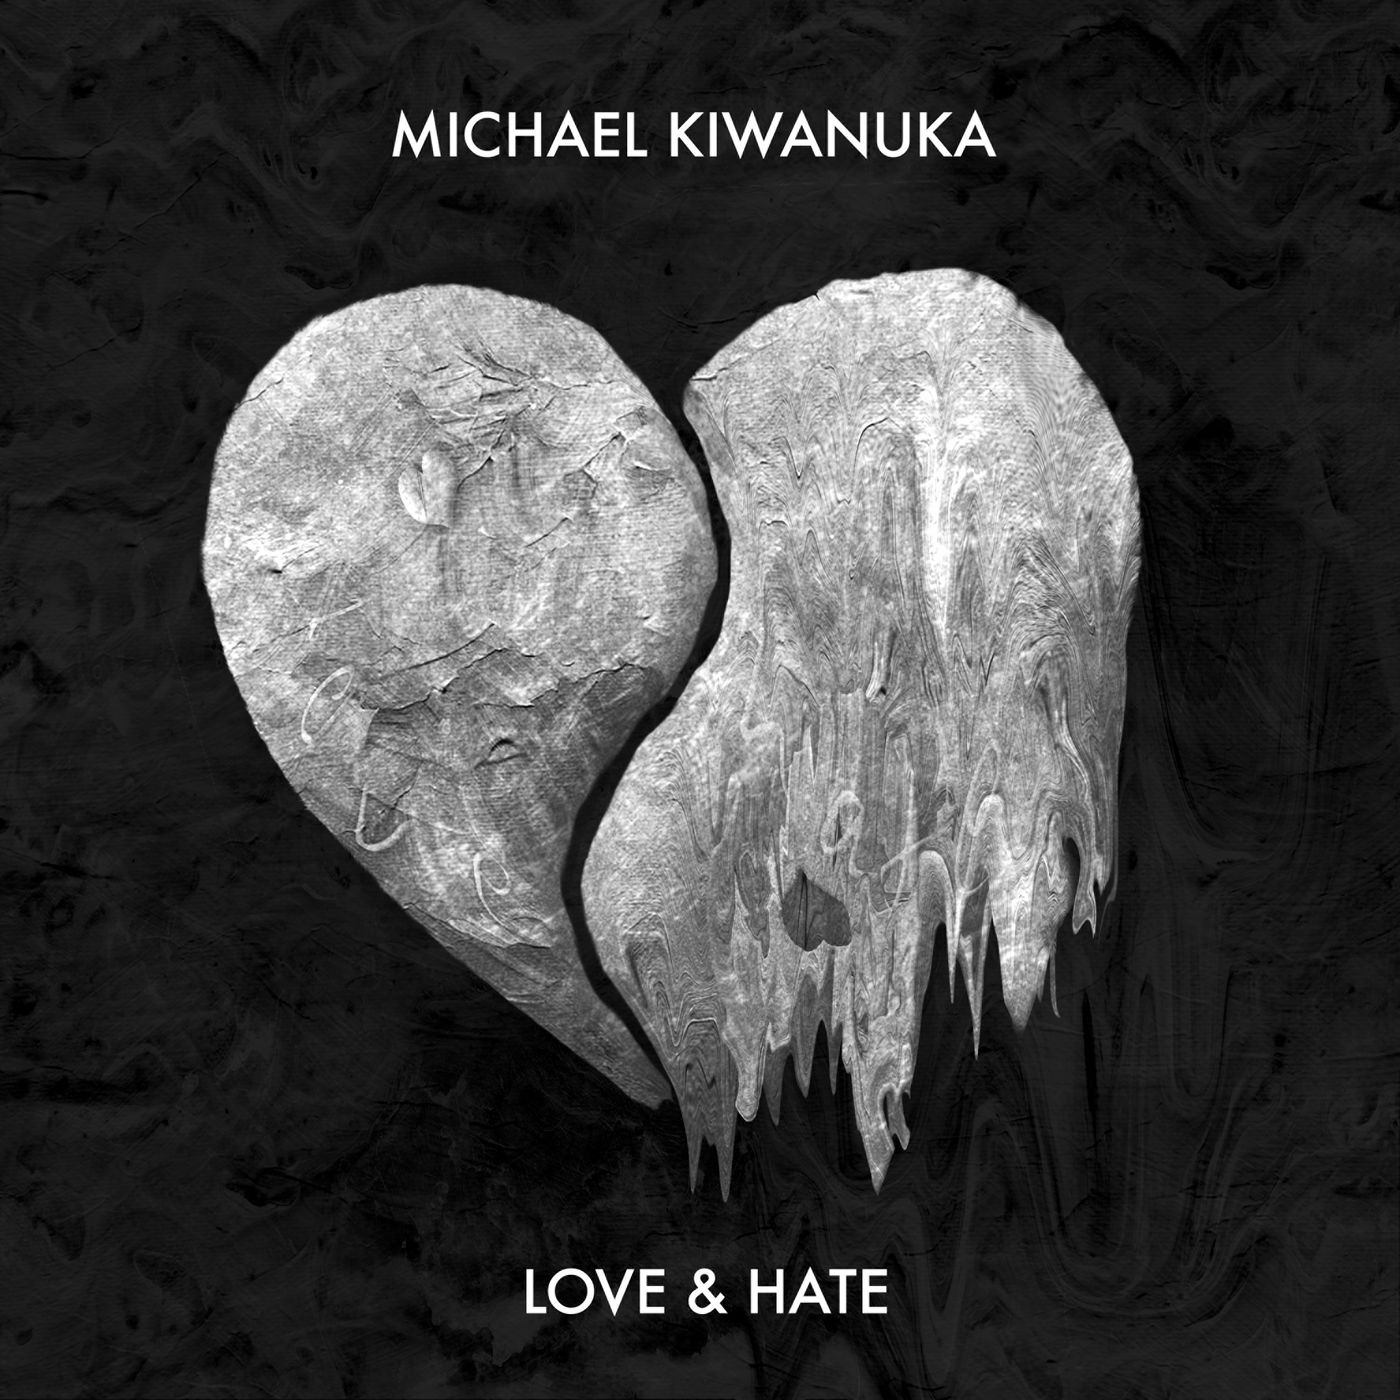 Michael Kiwanuka - Love & Hate (2016) [Qobuz FLAC 24bit/96kHz]